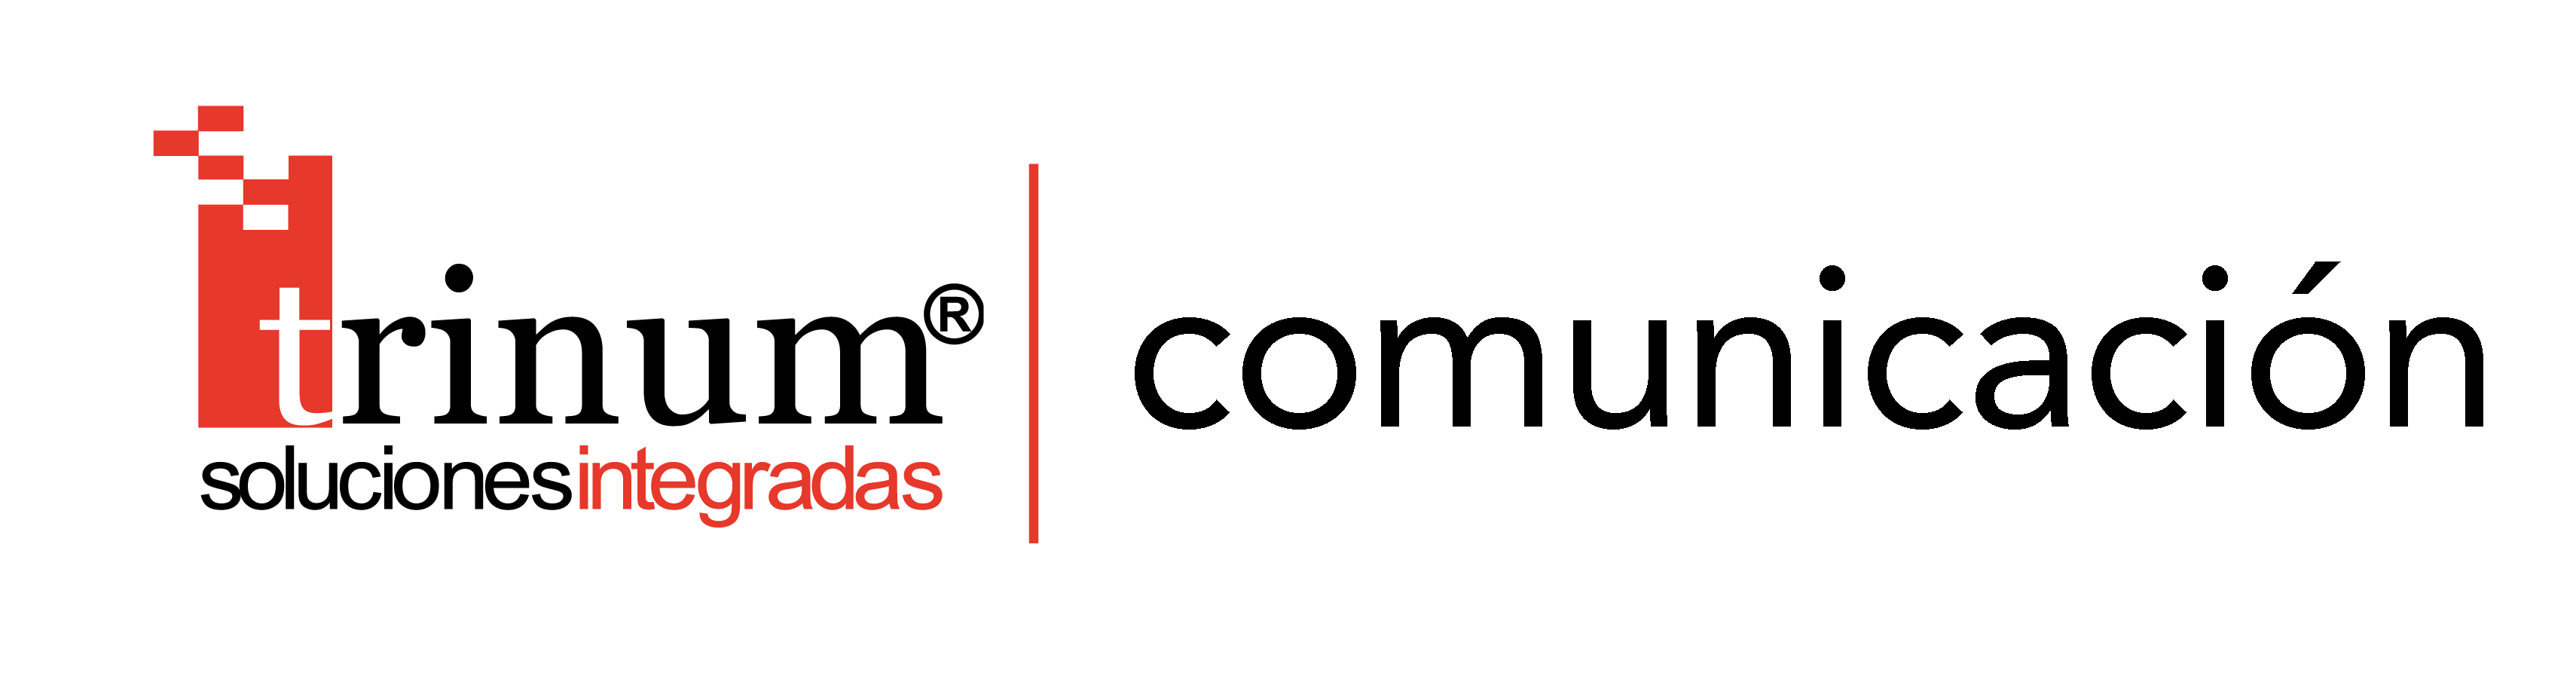 trinum comunicacion logo2